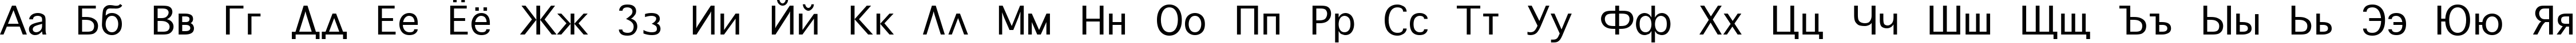 Пример написания русского алфавита шрифтом Geneva Plain:001.001